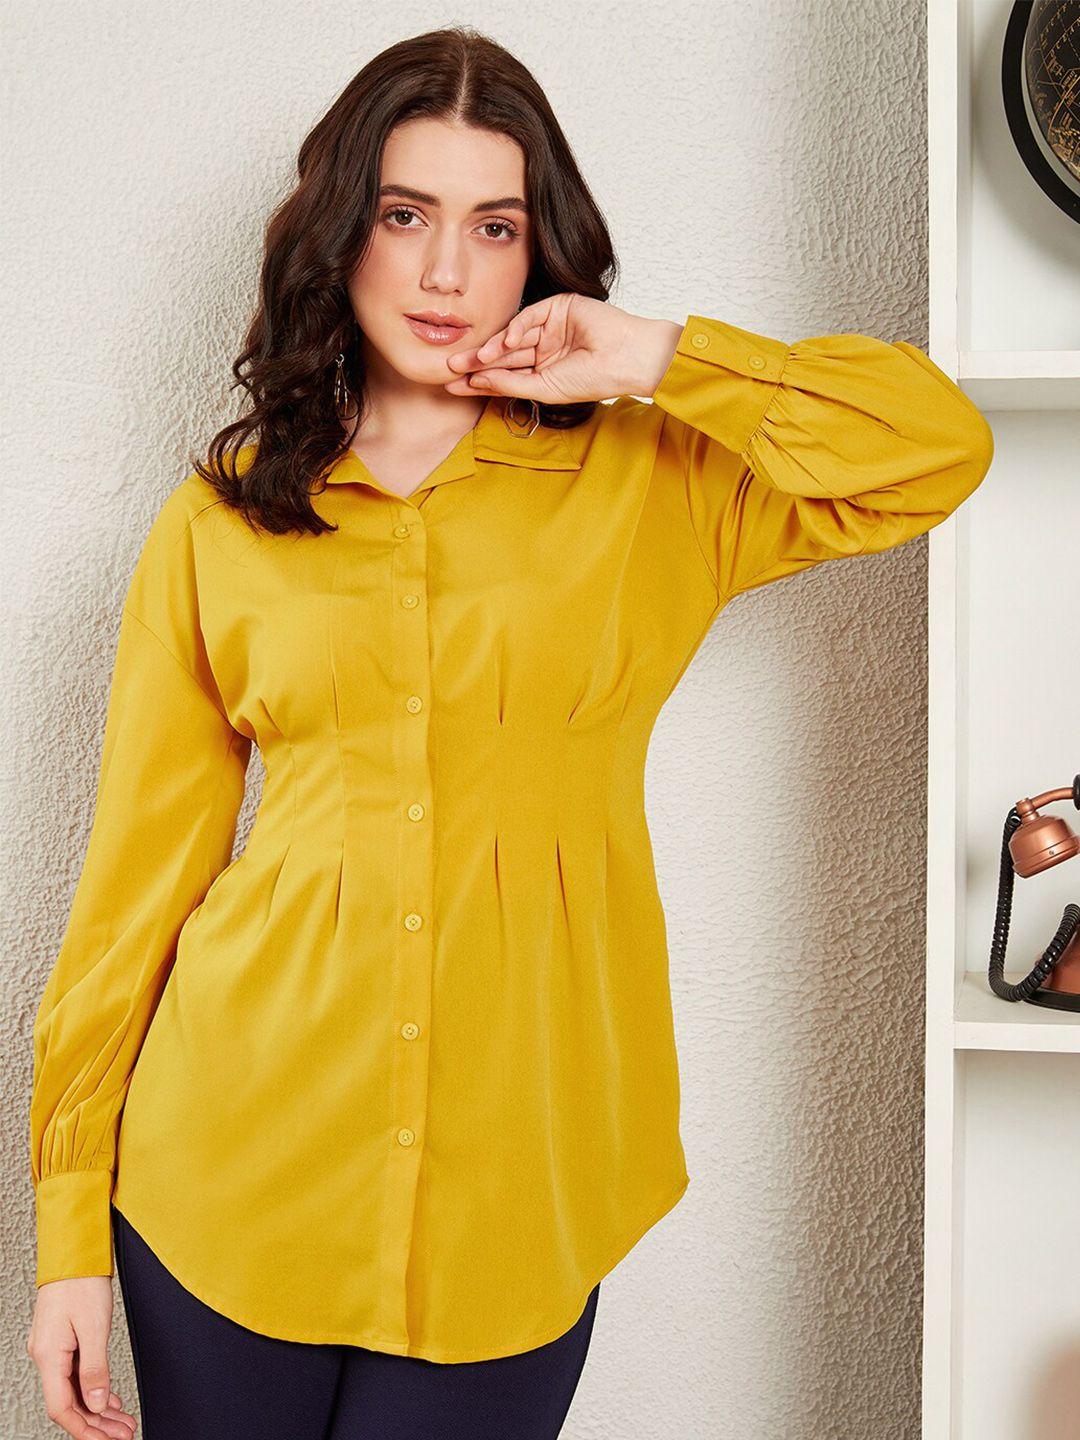 berrylush bizwear women yellow opaque casual shirt